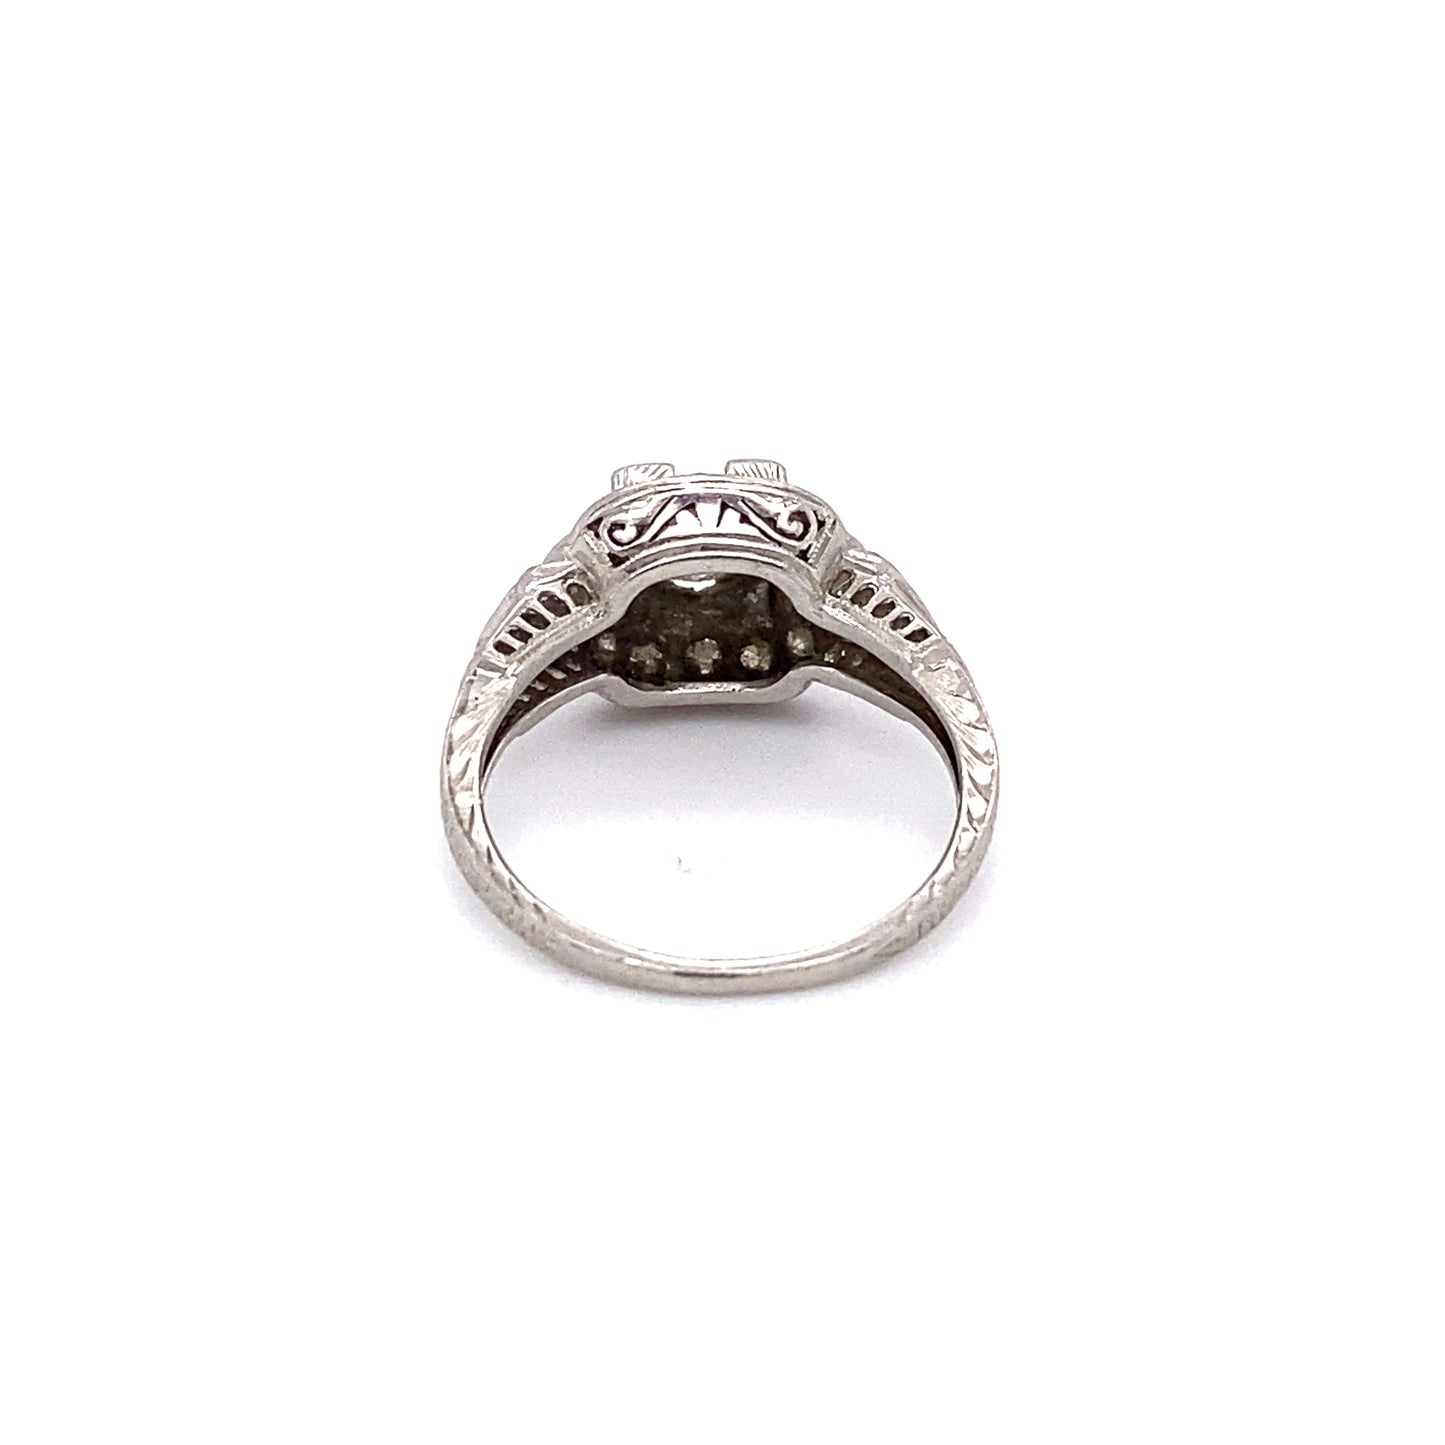 Circa 1920s 0.60 Carat Old European Cut Diamond Engagement Ring in Platinum